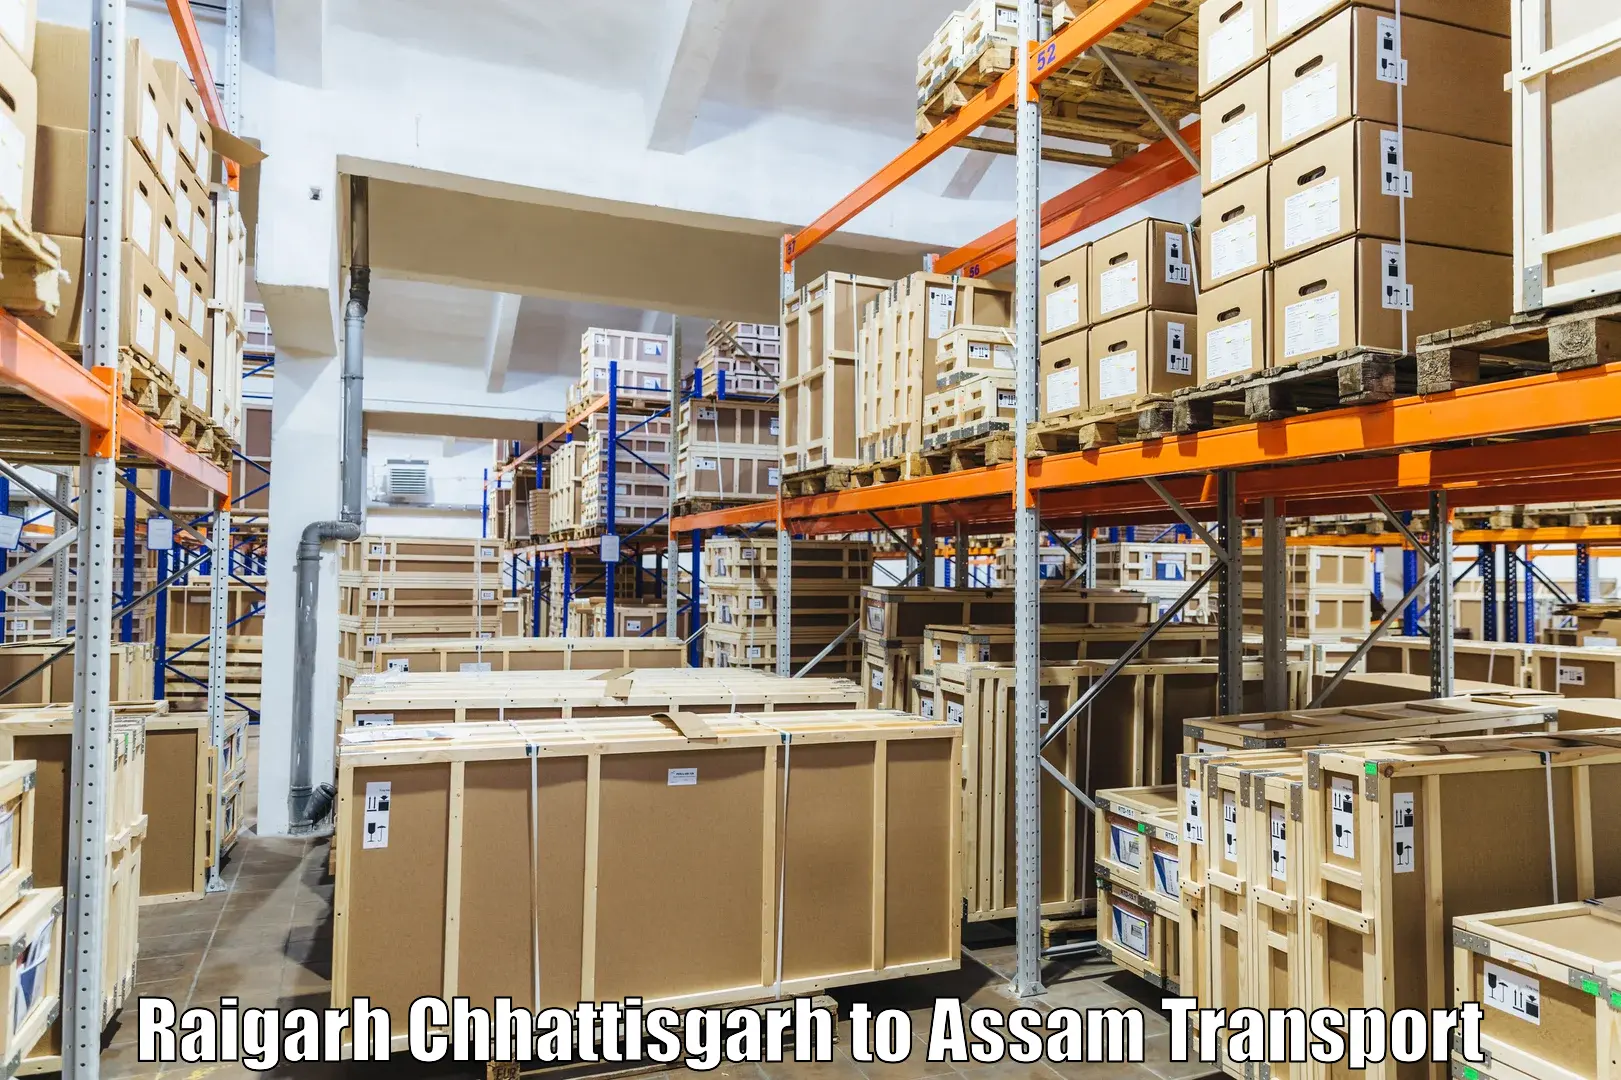 Truck transport companies in India Raigarh Chhattisgarh to Jonai